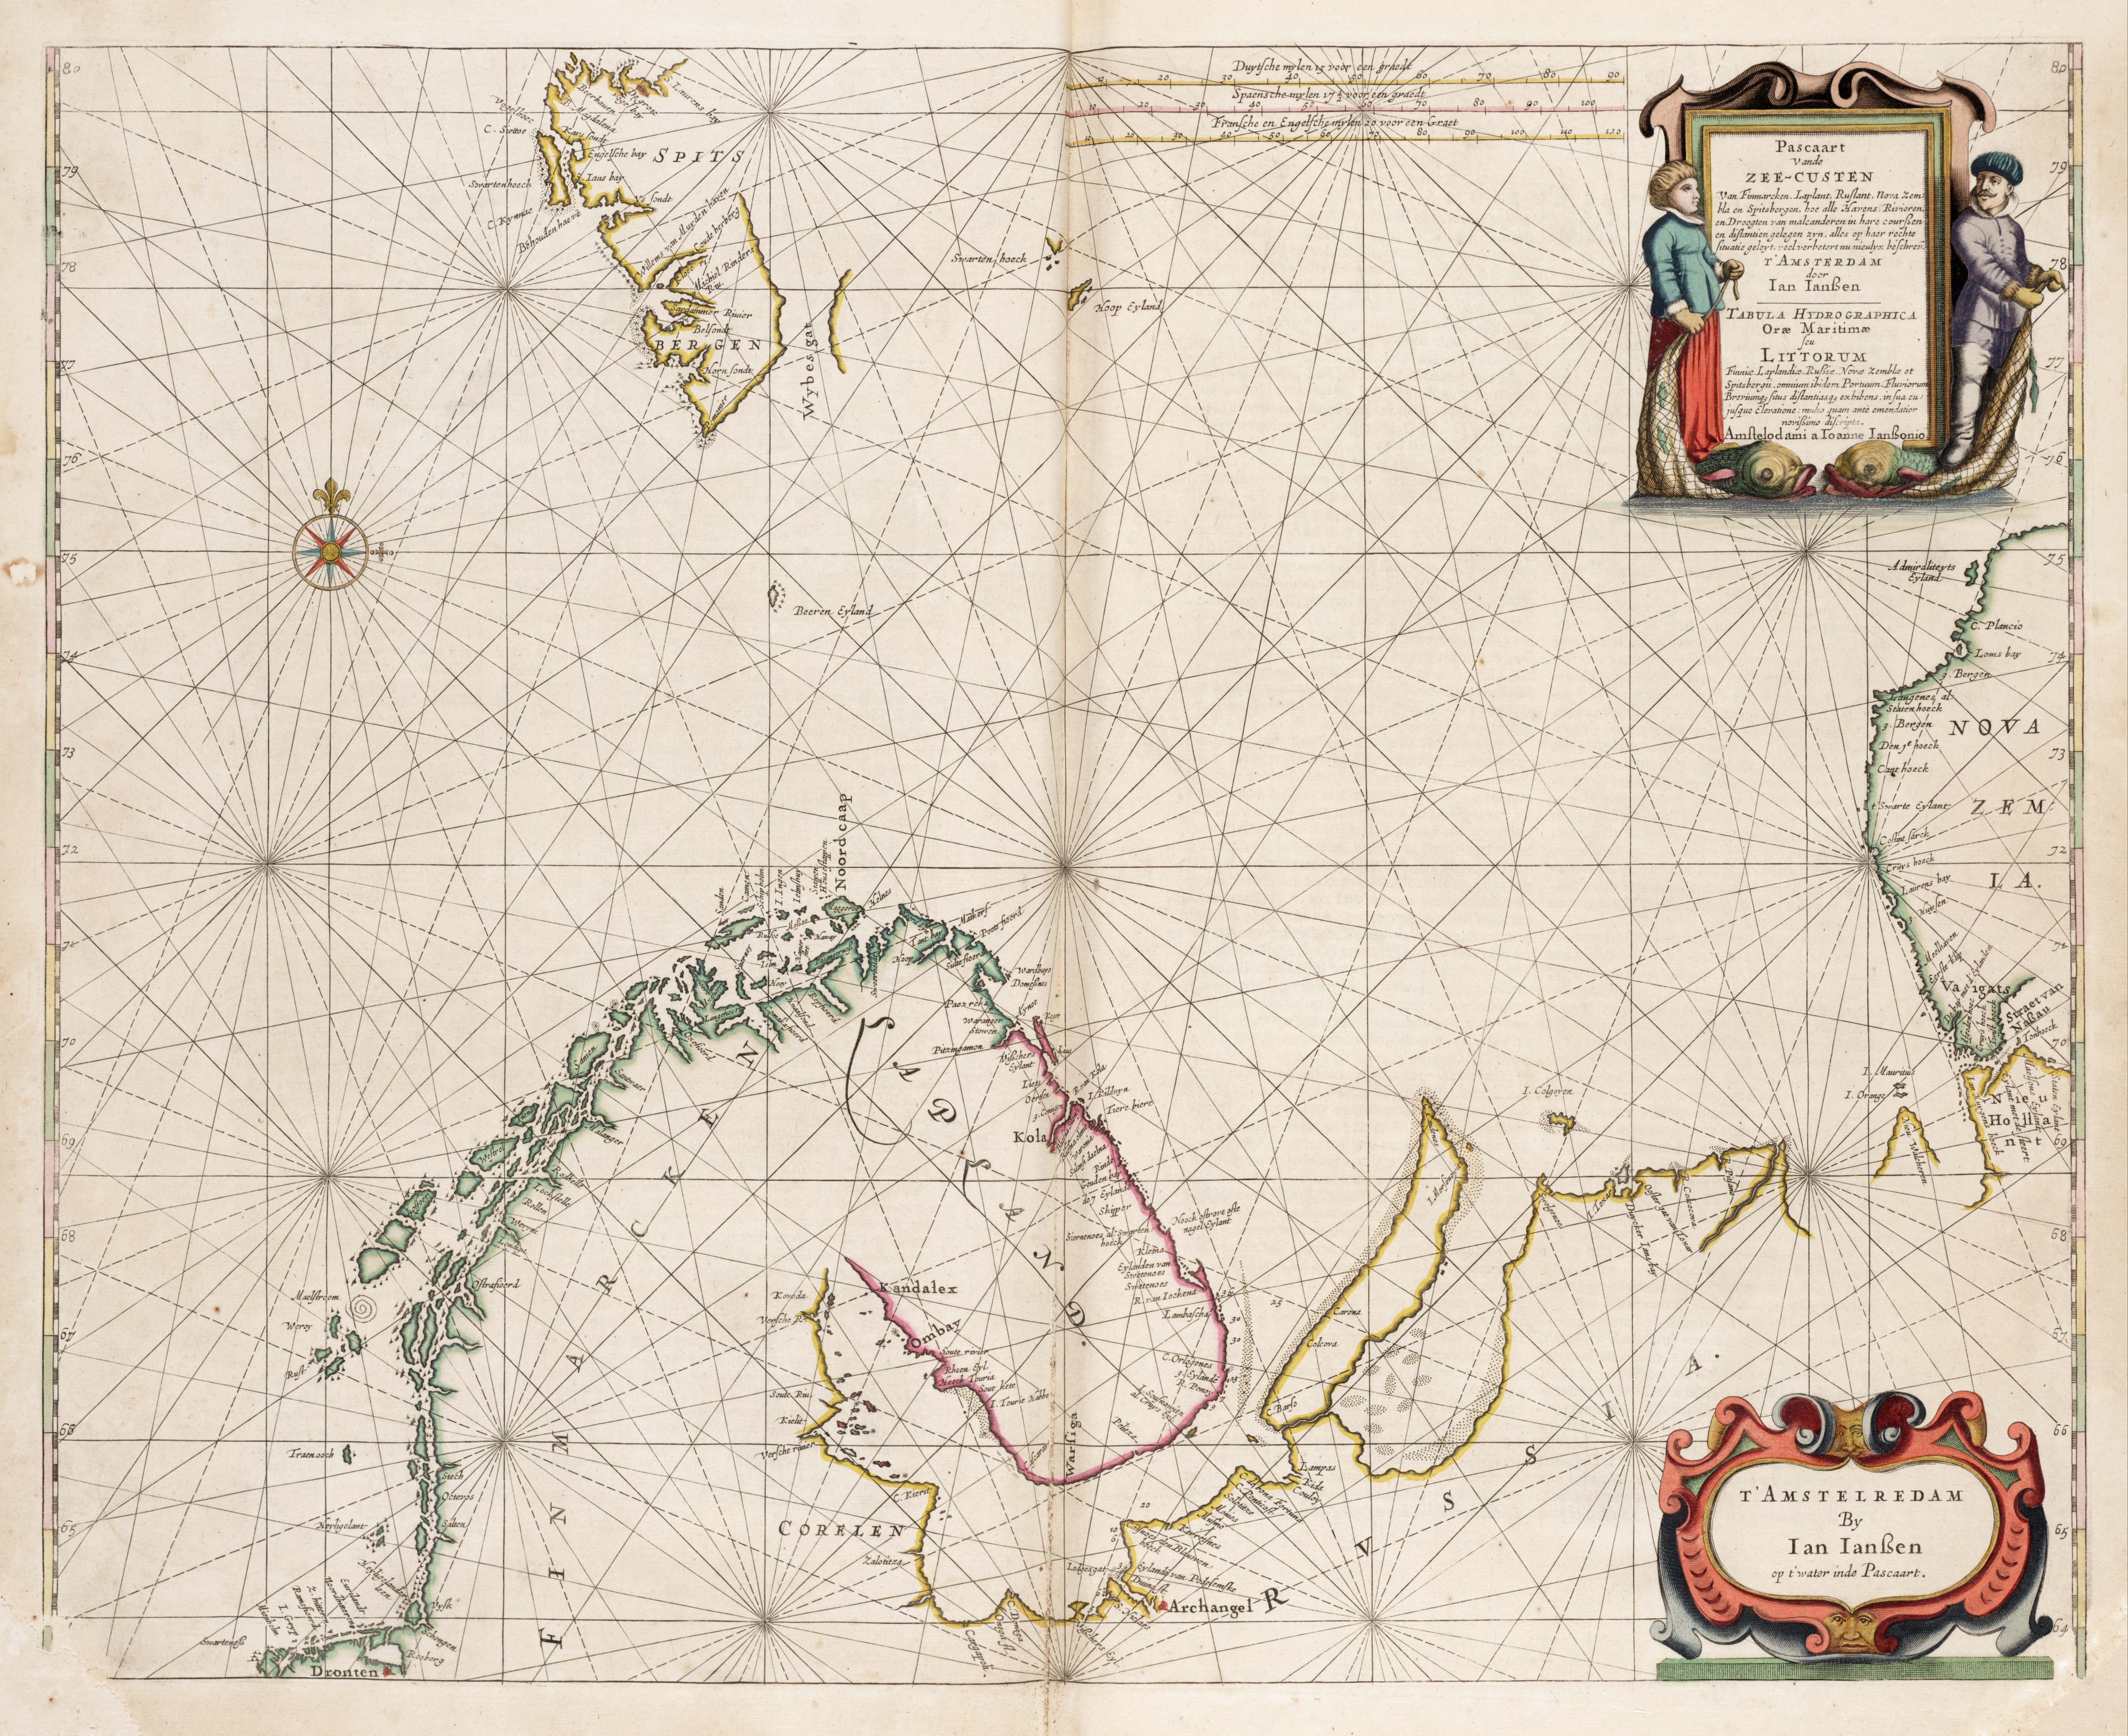 1657, Zeekaart van de Barents Zee met Finmarken